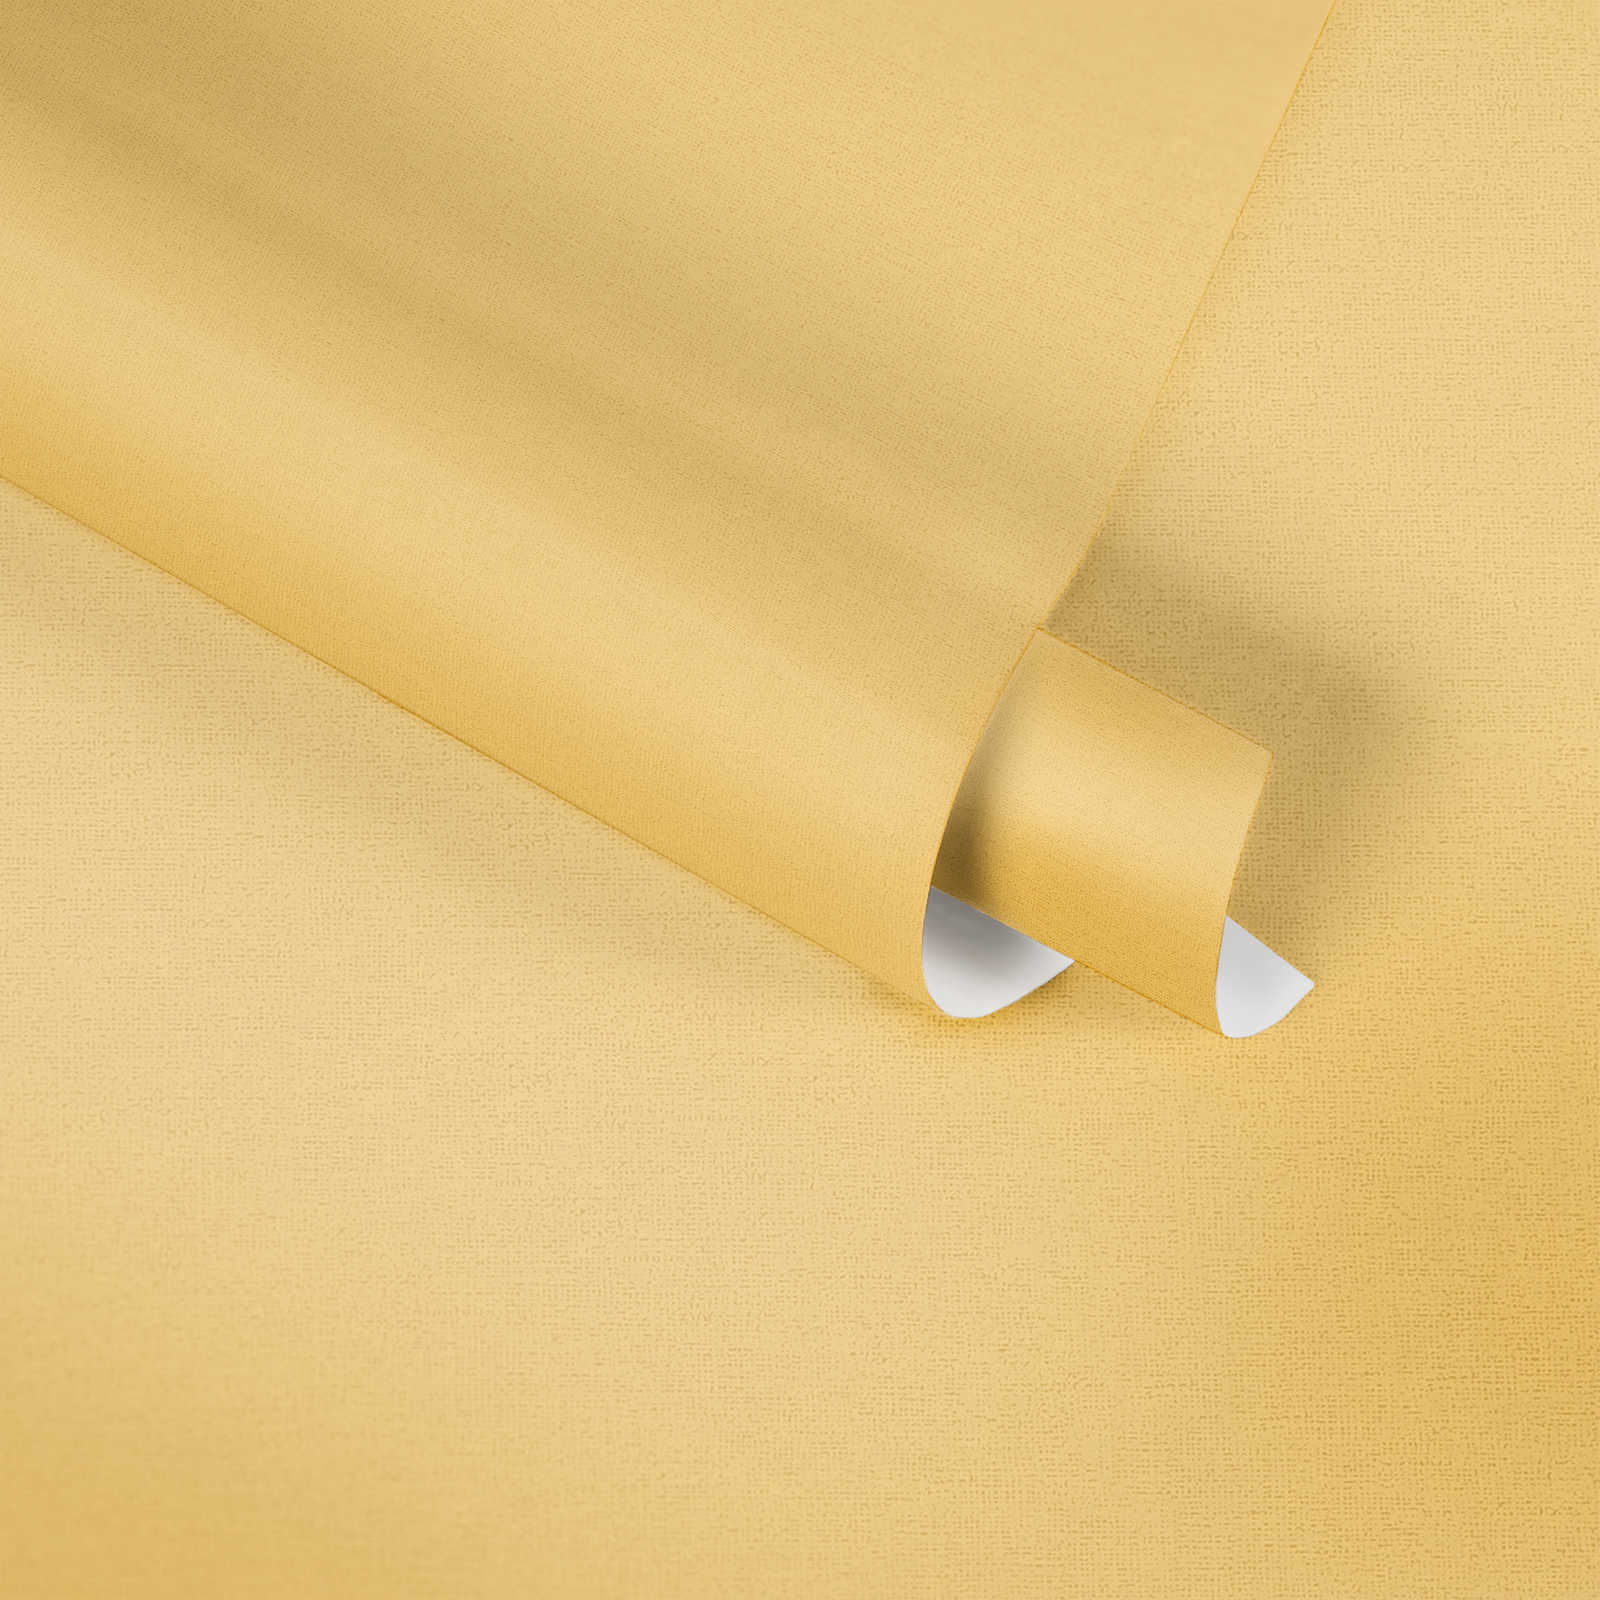             Papel pintado amarillo de MICHALSKY liso y mate
        